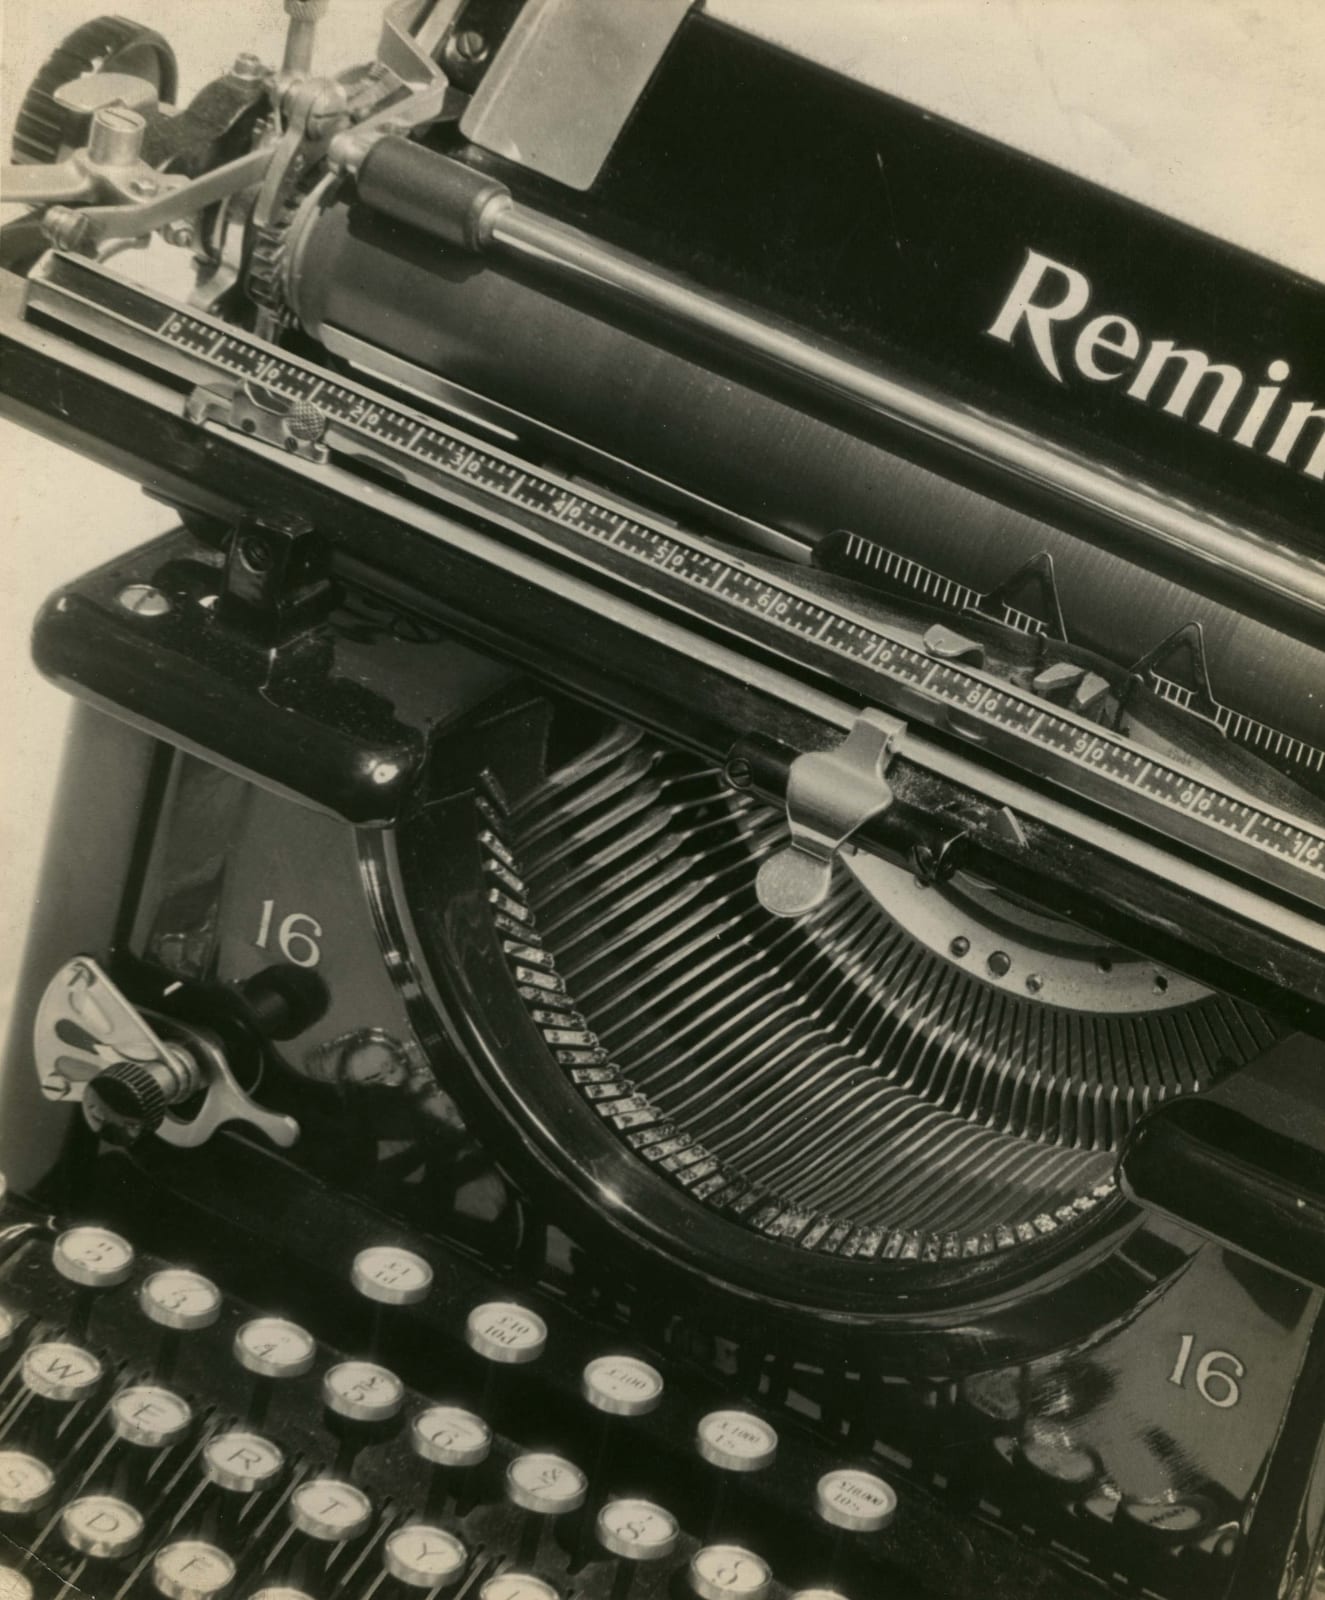 Man Ray, Typewriter, c. 1925